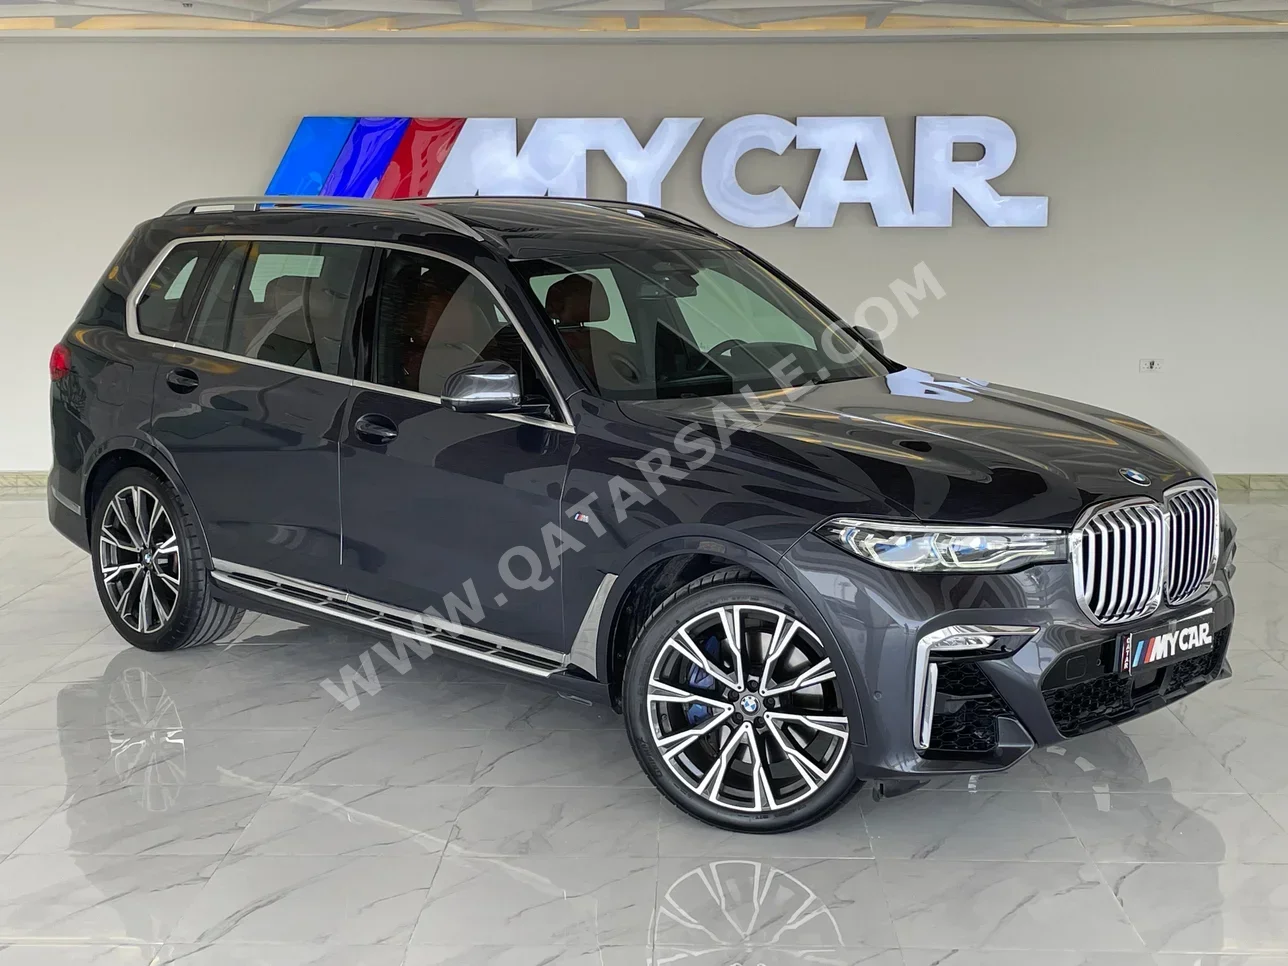 BMW  X-Series  X7  2019  Automatic  93,000 Km  8 Cylinder  All Wheel Drive (AWD)  SUV  Gray  With Warranty